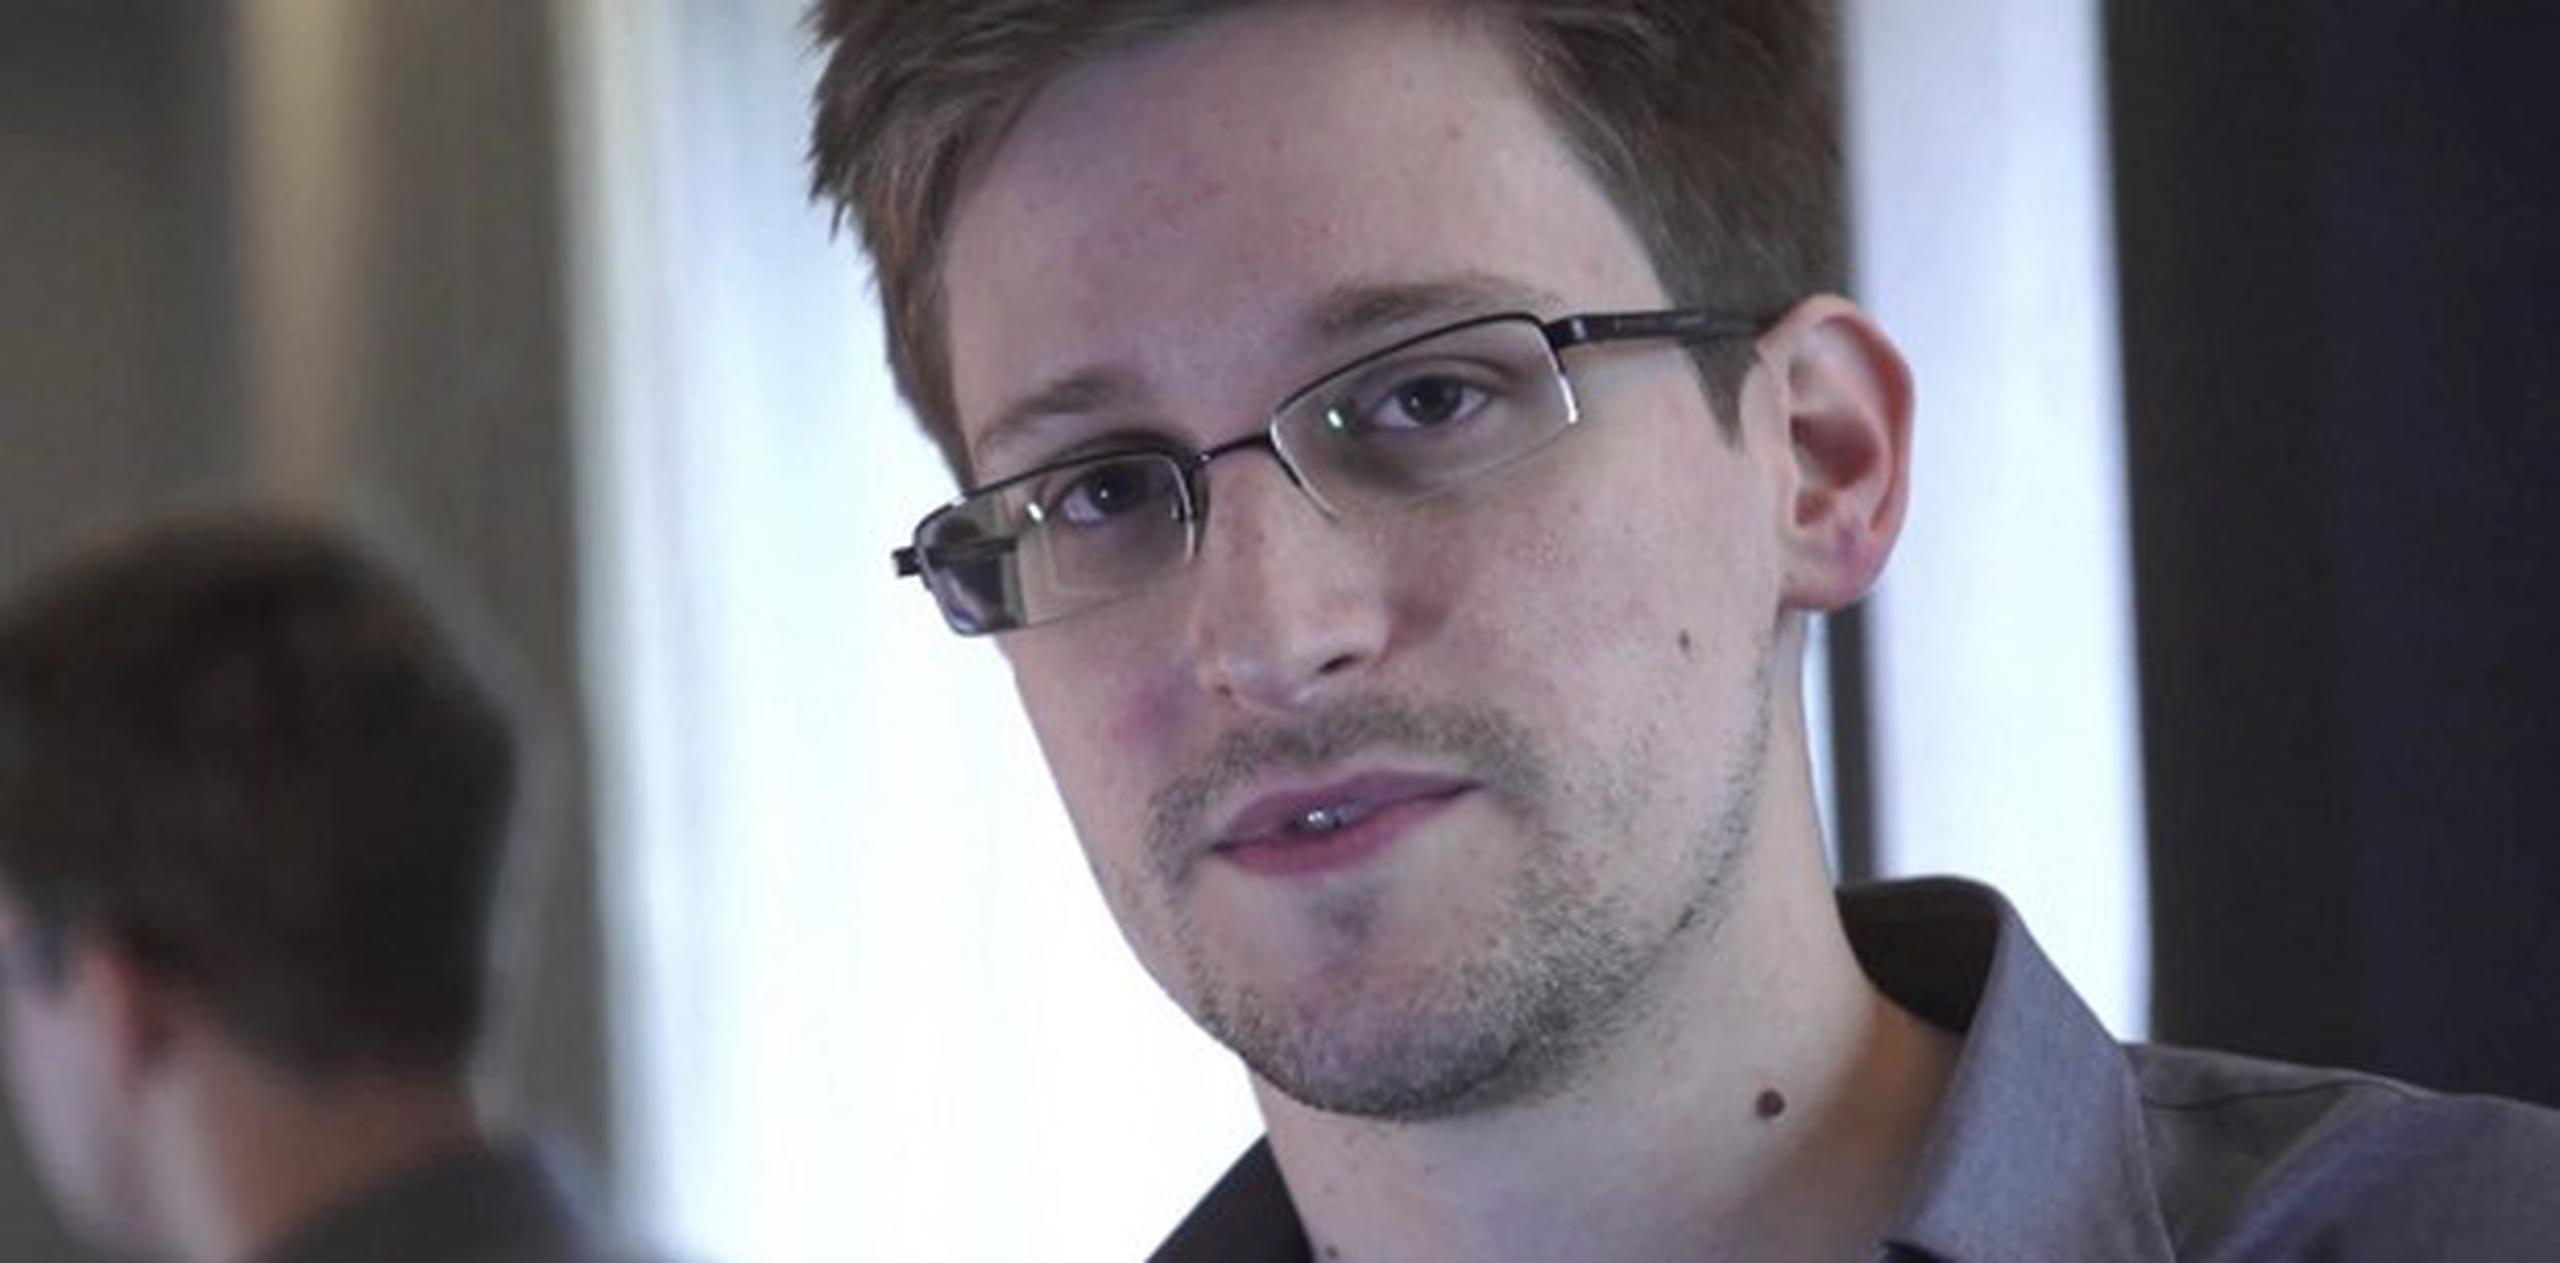 "Para mí, en términos de satisfacción personal, la misión ya ha sido cumplida. Ya gané", dijo Snowden. (AP)